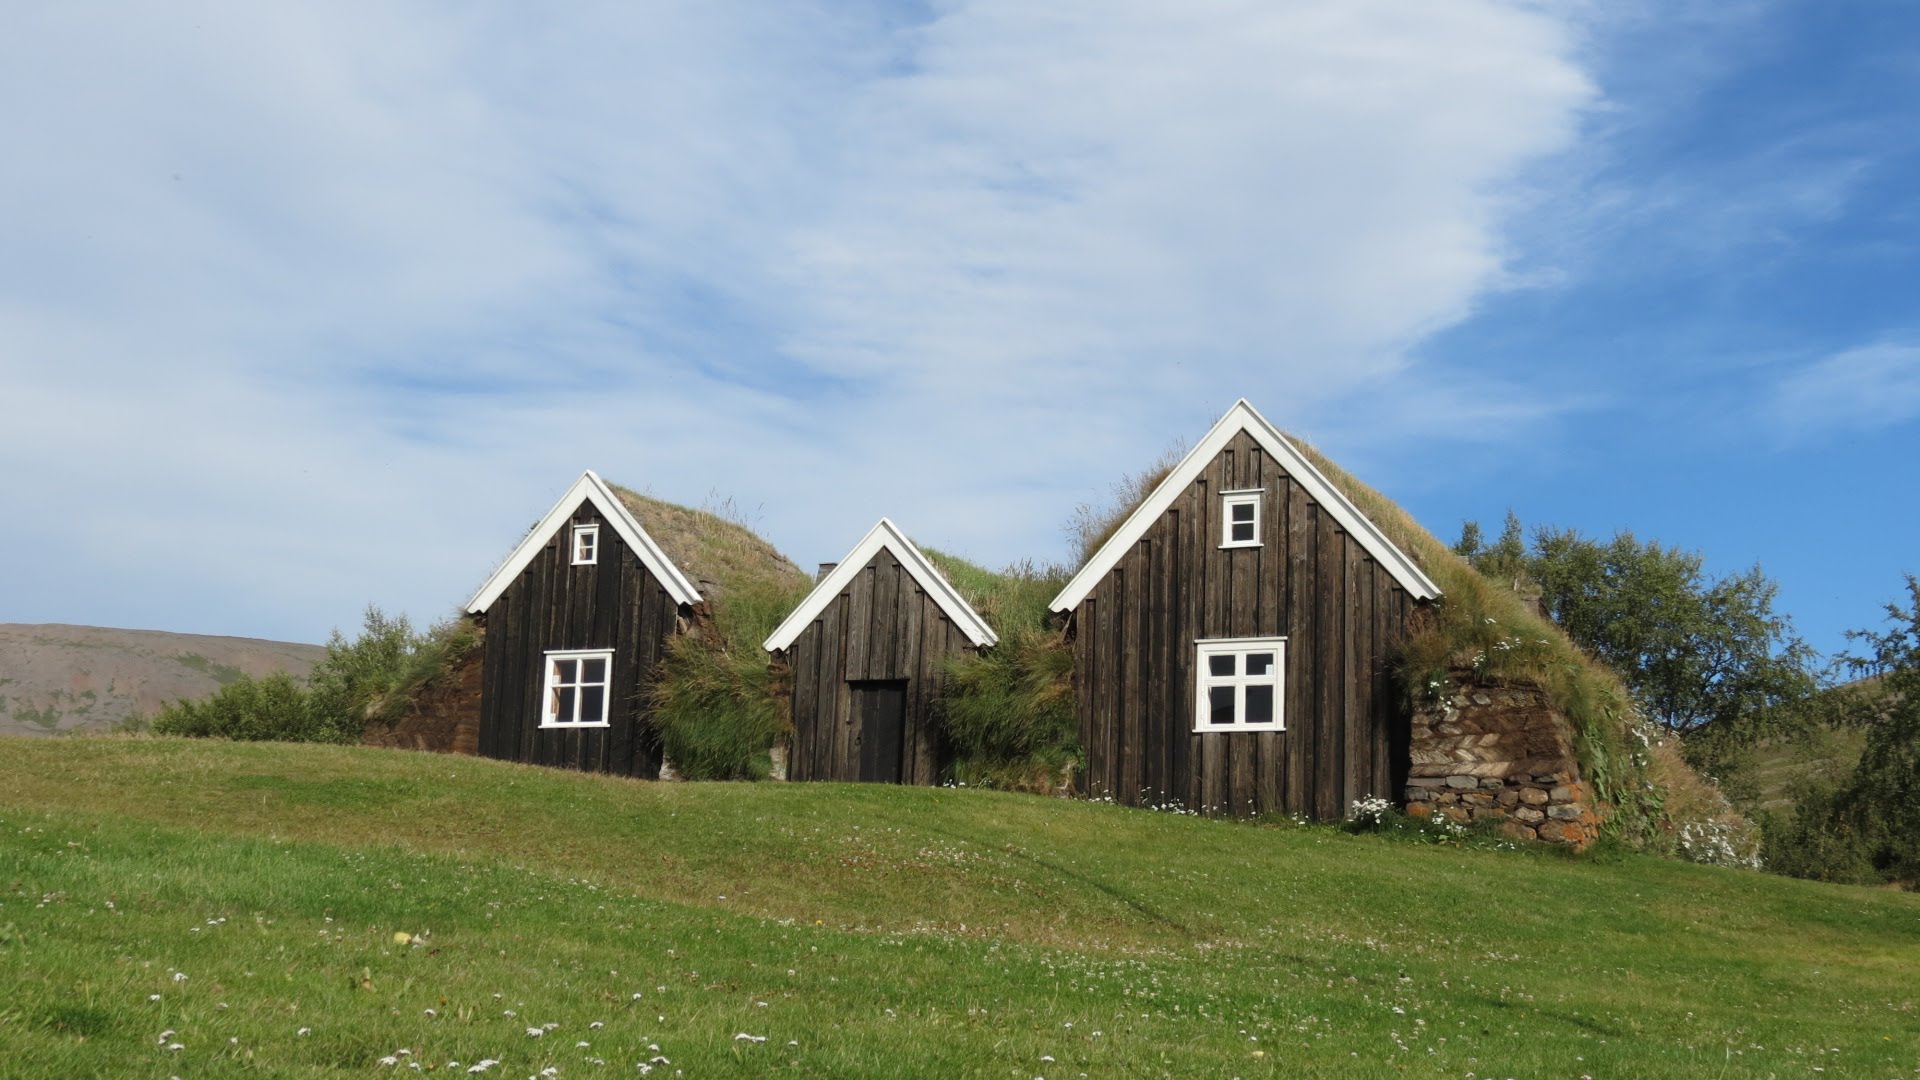 Nýibær Turf House and Cathedral - Hólar - Iceland - YouTube